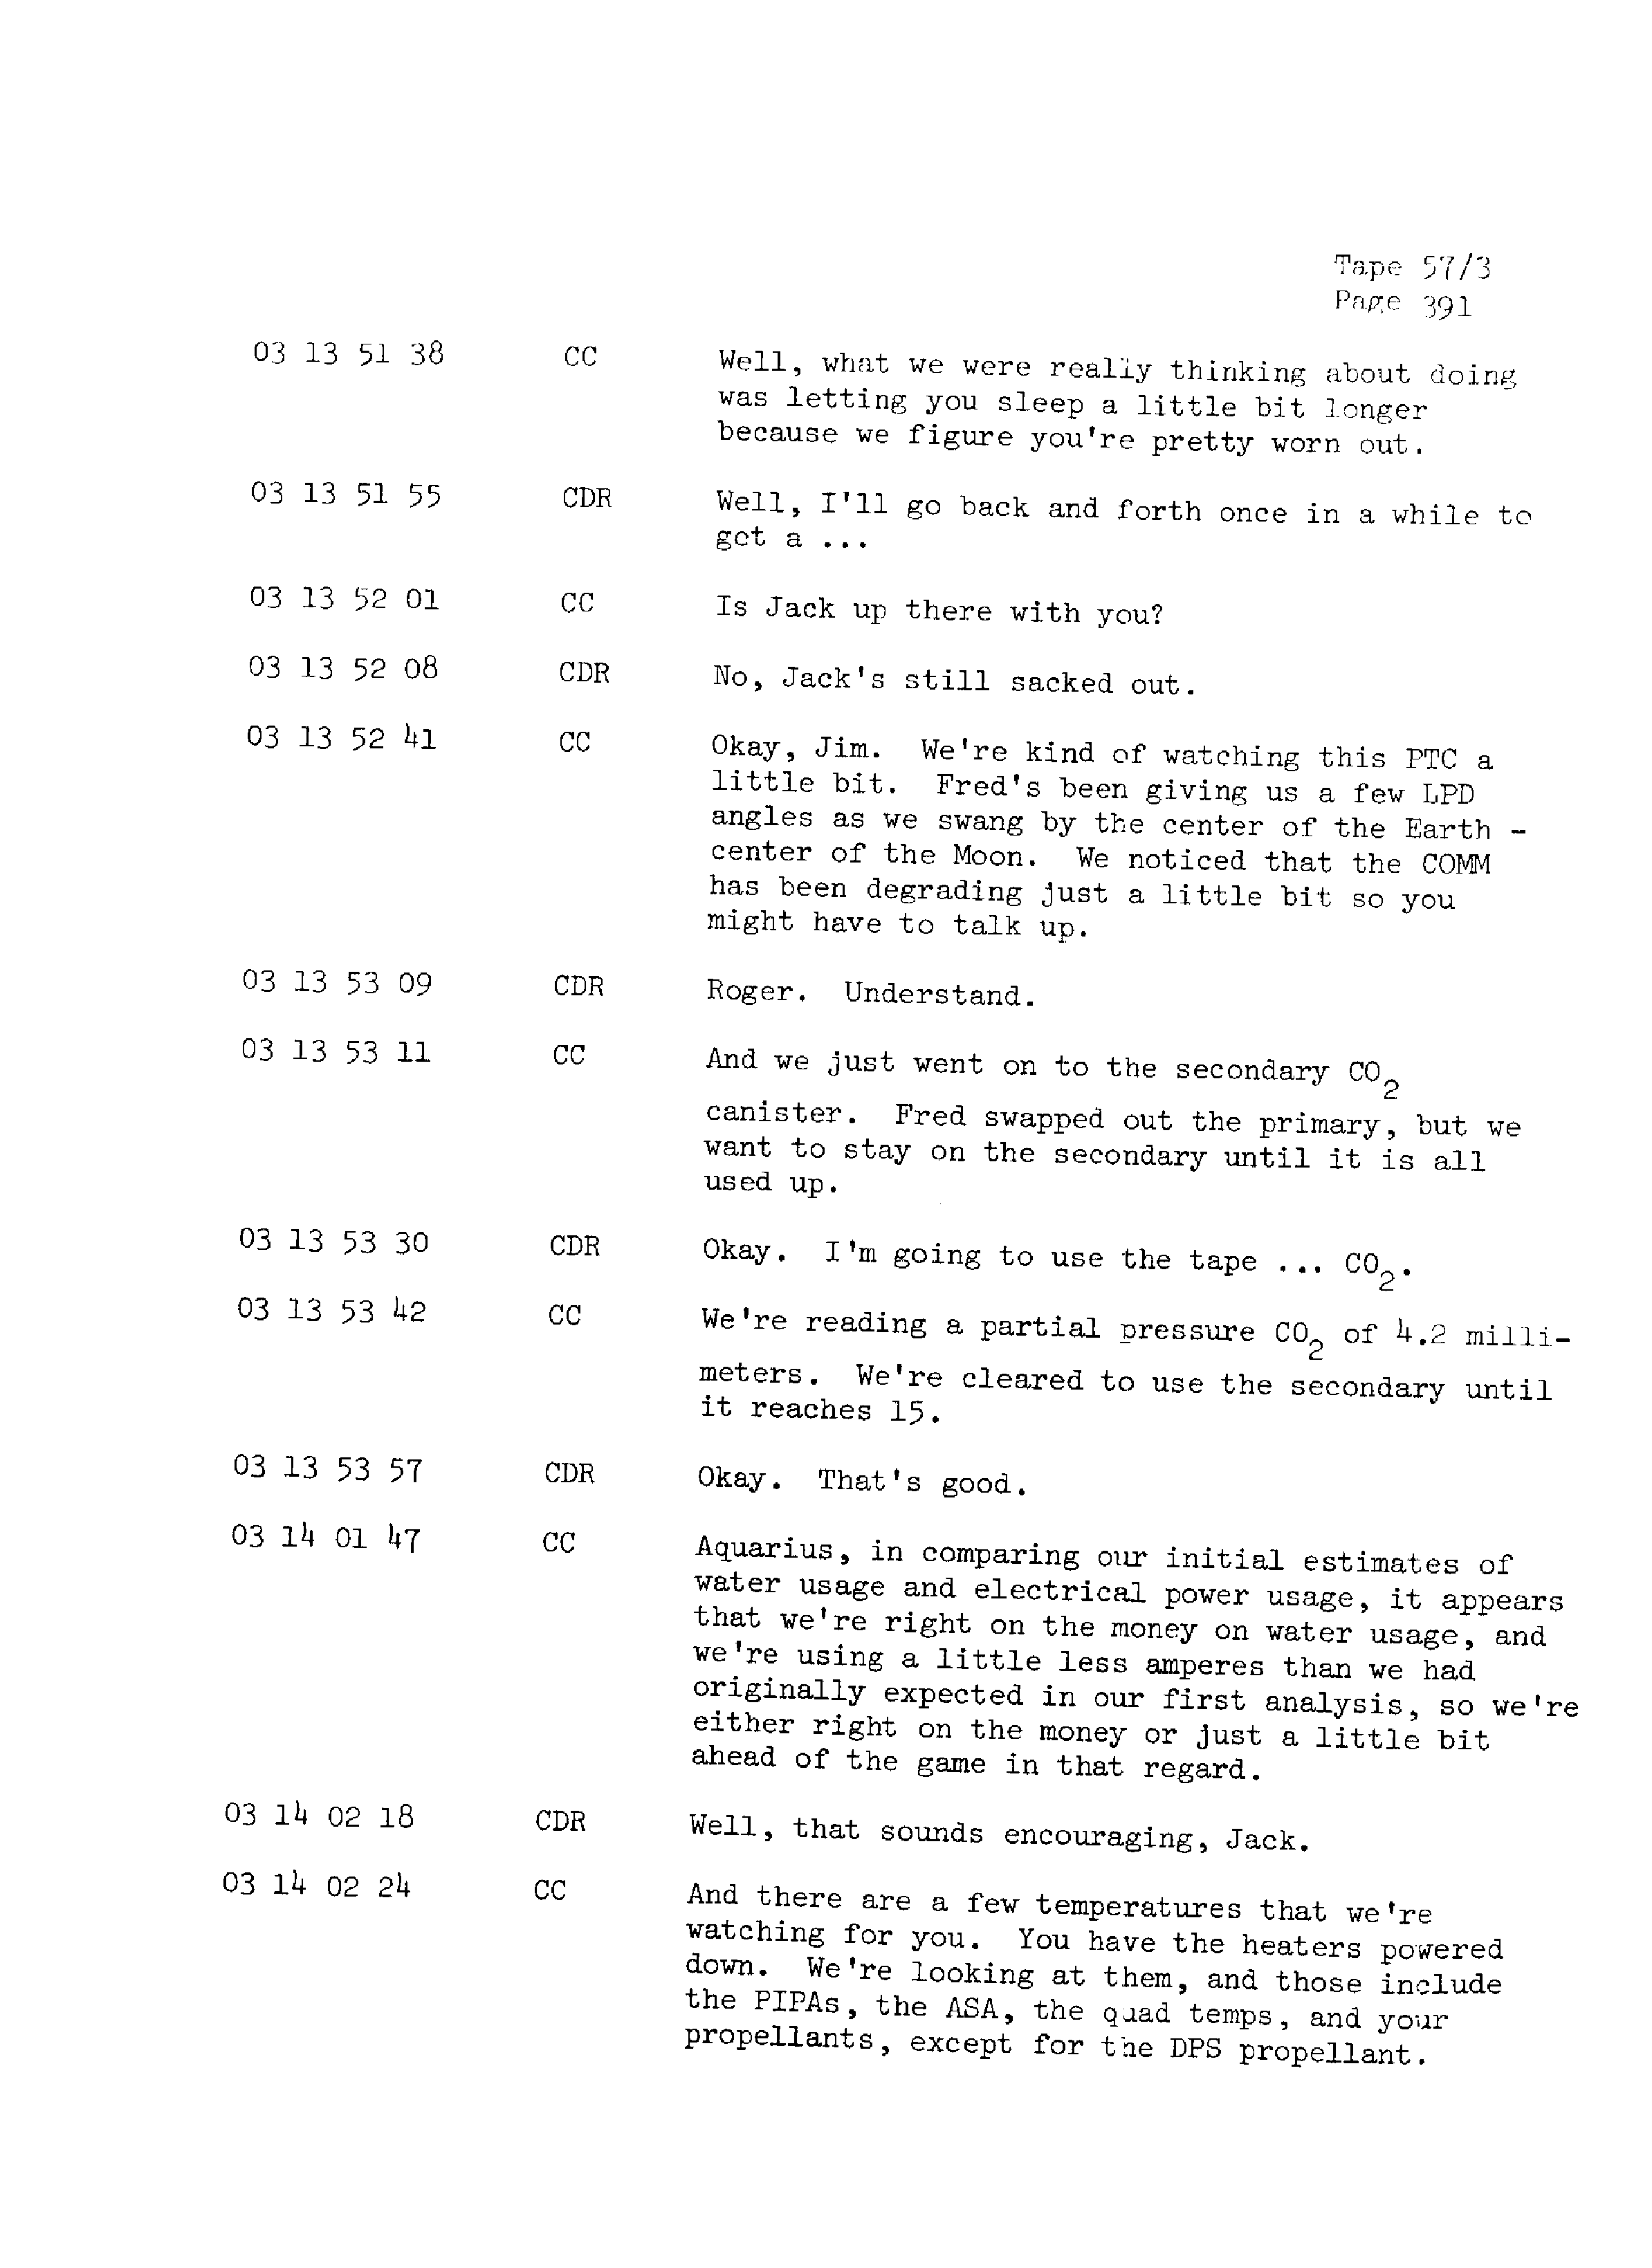 Page 398 of Apollo 13’s original transcript